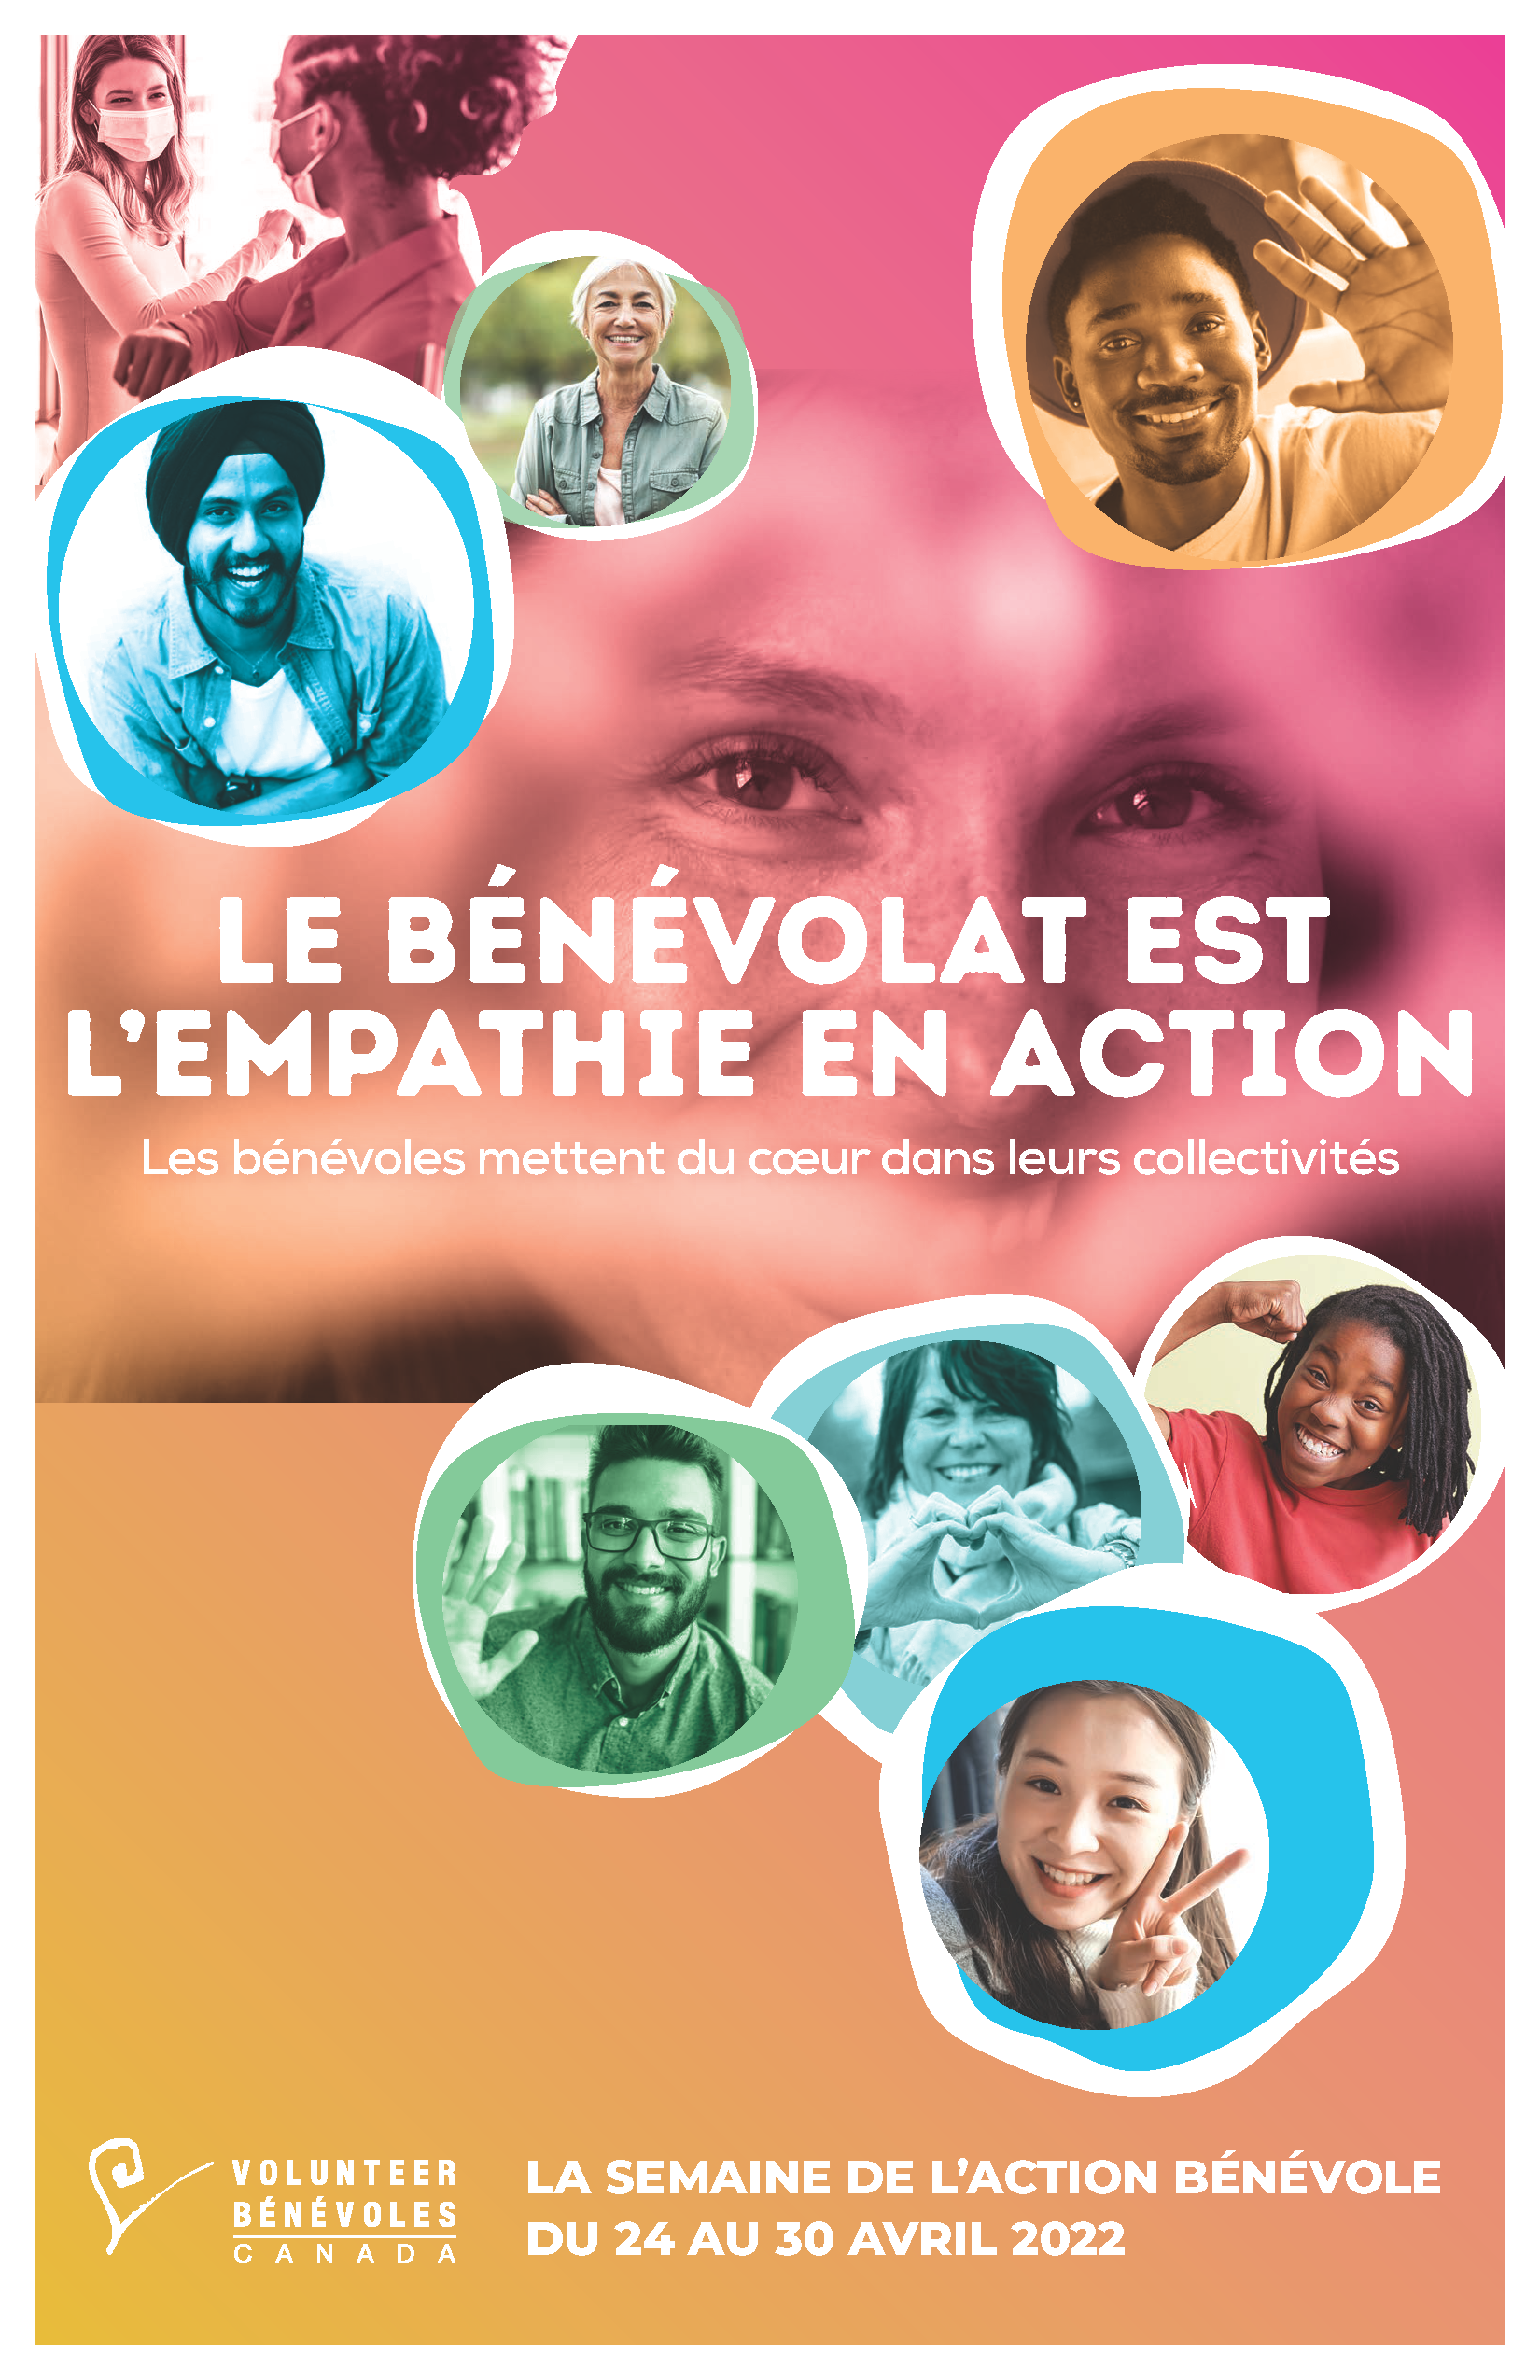 Le thème de l’édition 2022 de la Semaine de l’action bénévole Le bénévolat est l'empathie en action: images of individuals smiling